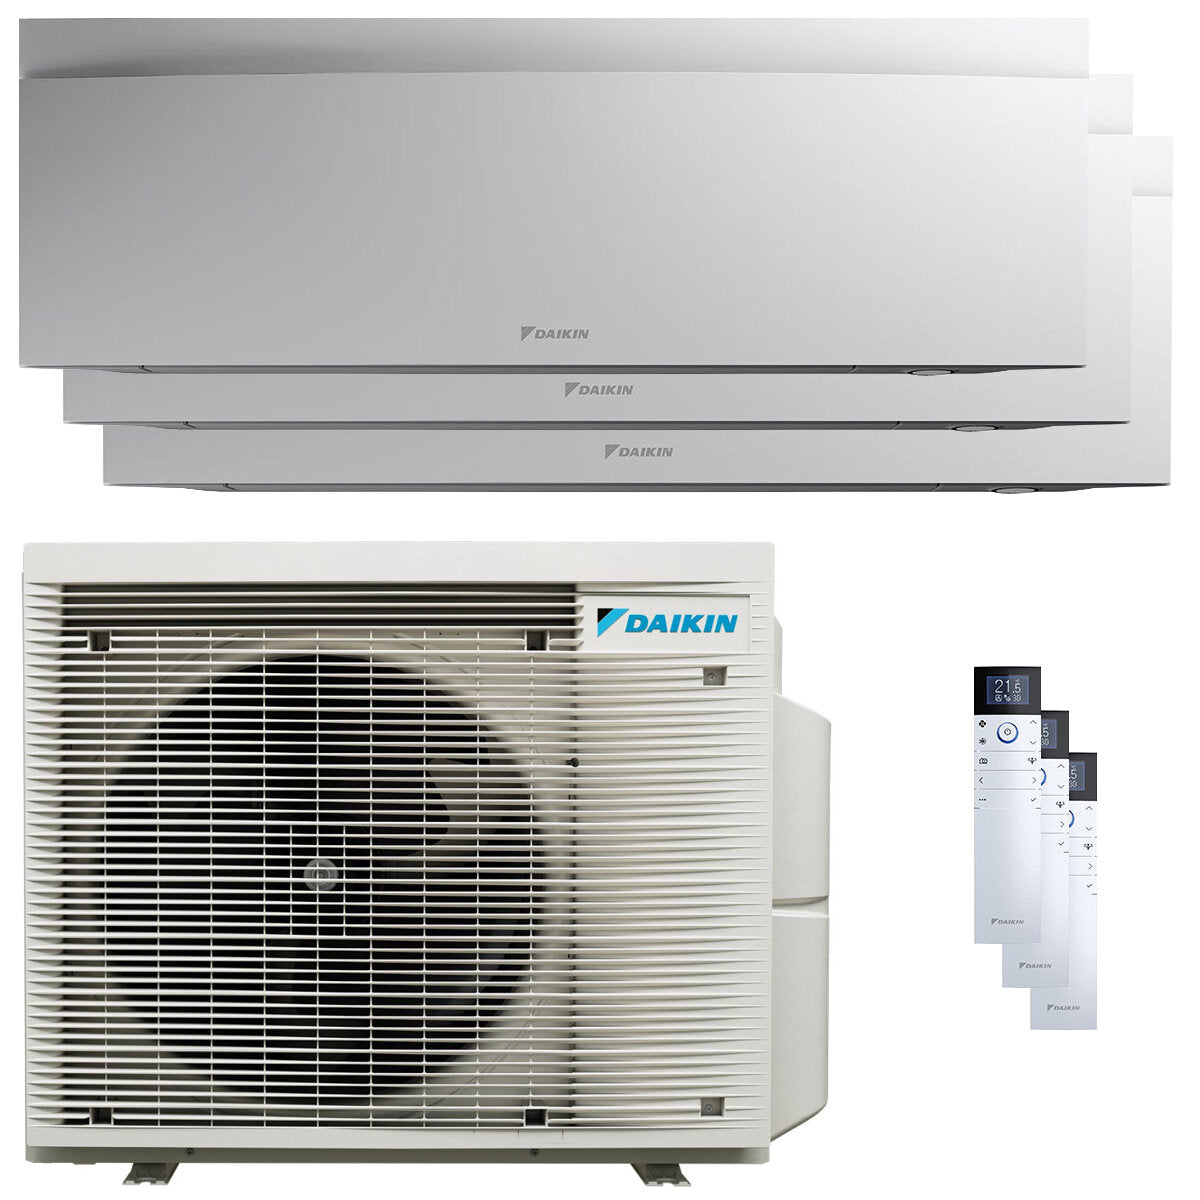 Daikin Emura 3 trial split air conditioner 9000+12000+18000 BTU inverter A+ wifi outdoor unit 6.8 kW White